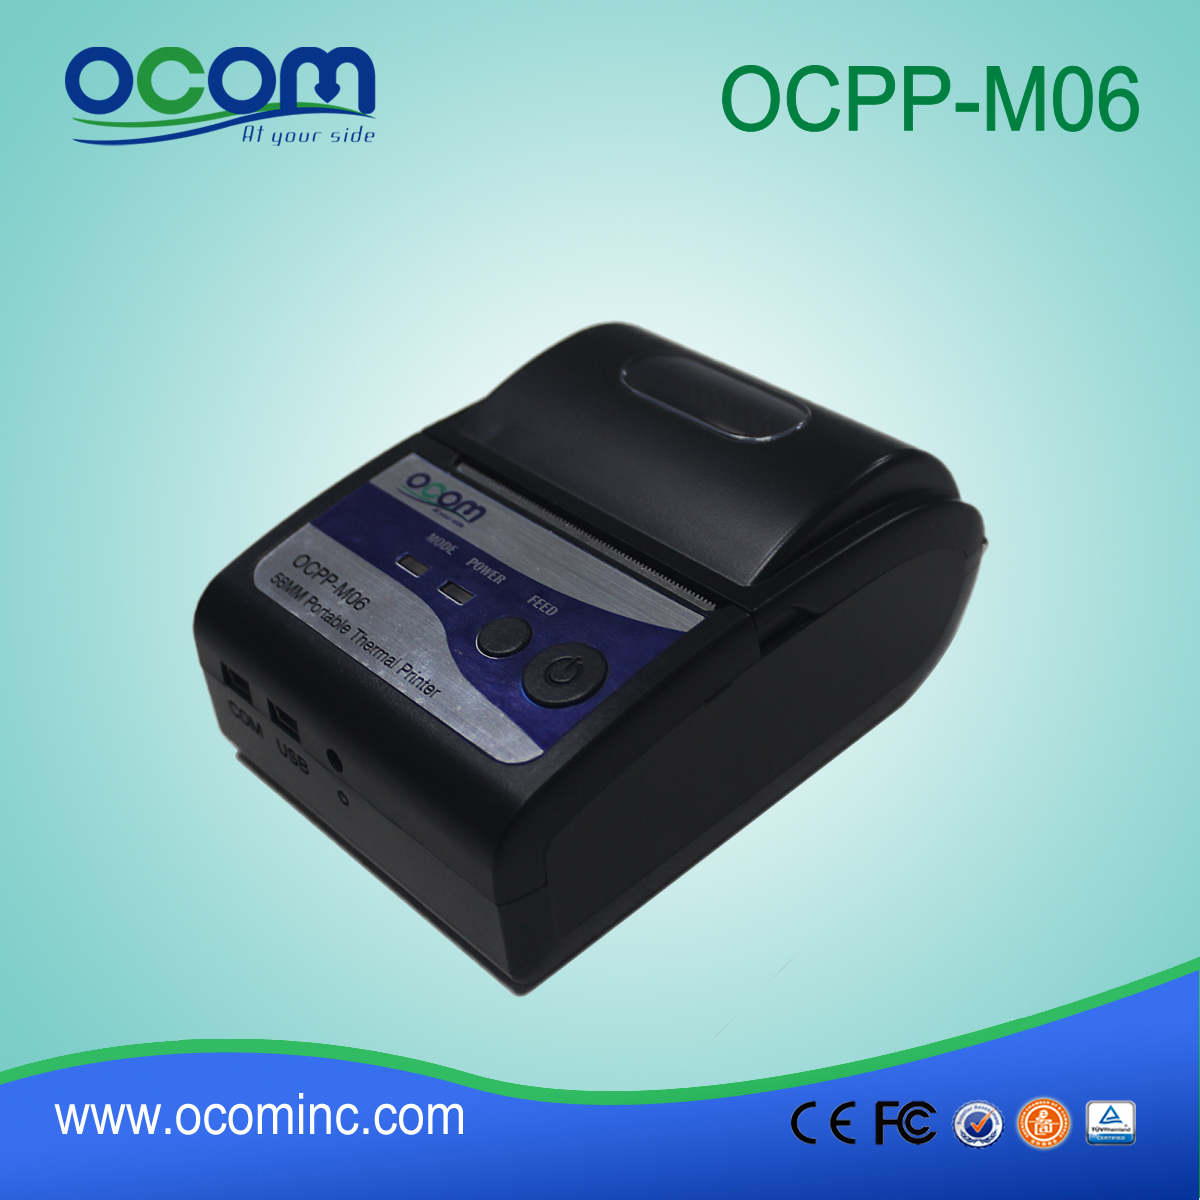 OCPP-M06：中国工厂生产的12V热敏打印机